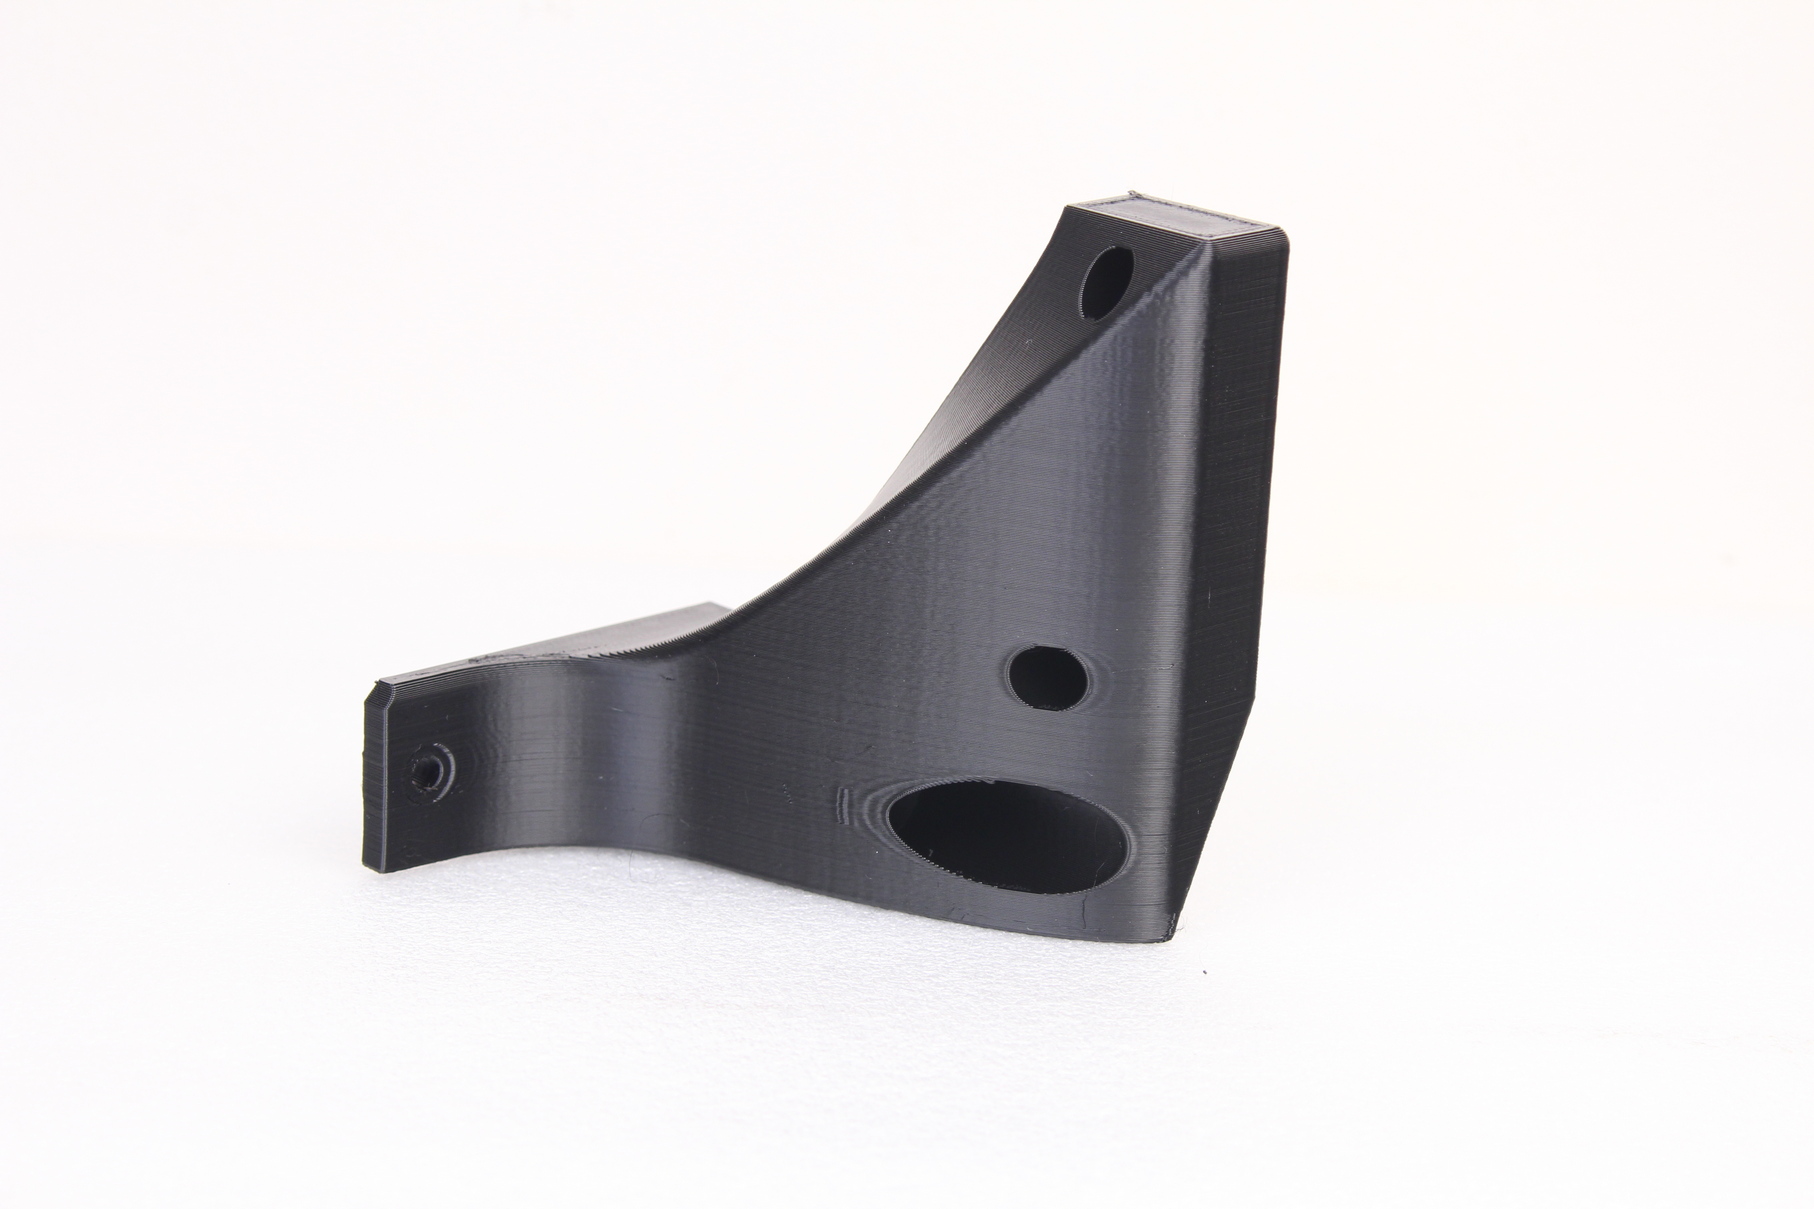 Prusa Mini brace pritned on RatRig V Core 3 in PETG 4 | RatRig V-Core 3 Review: Premium CoreXY 3D Printer Kit